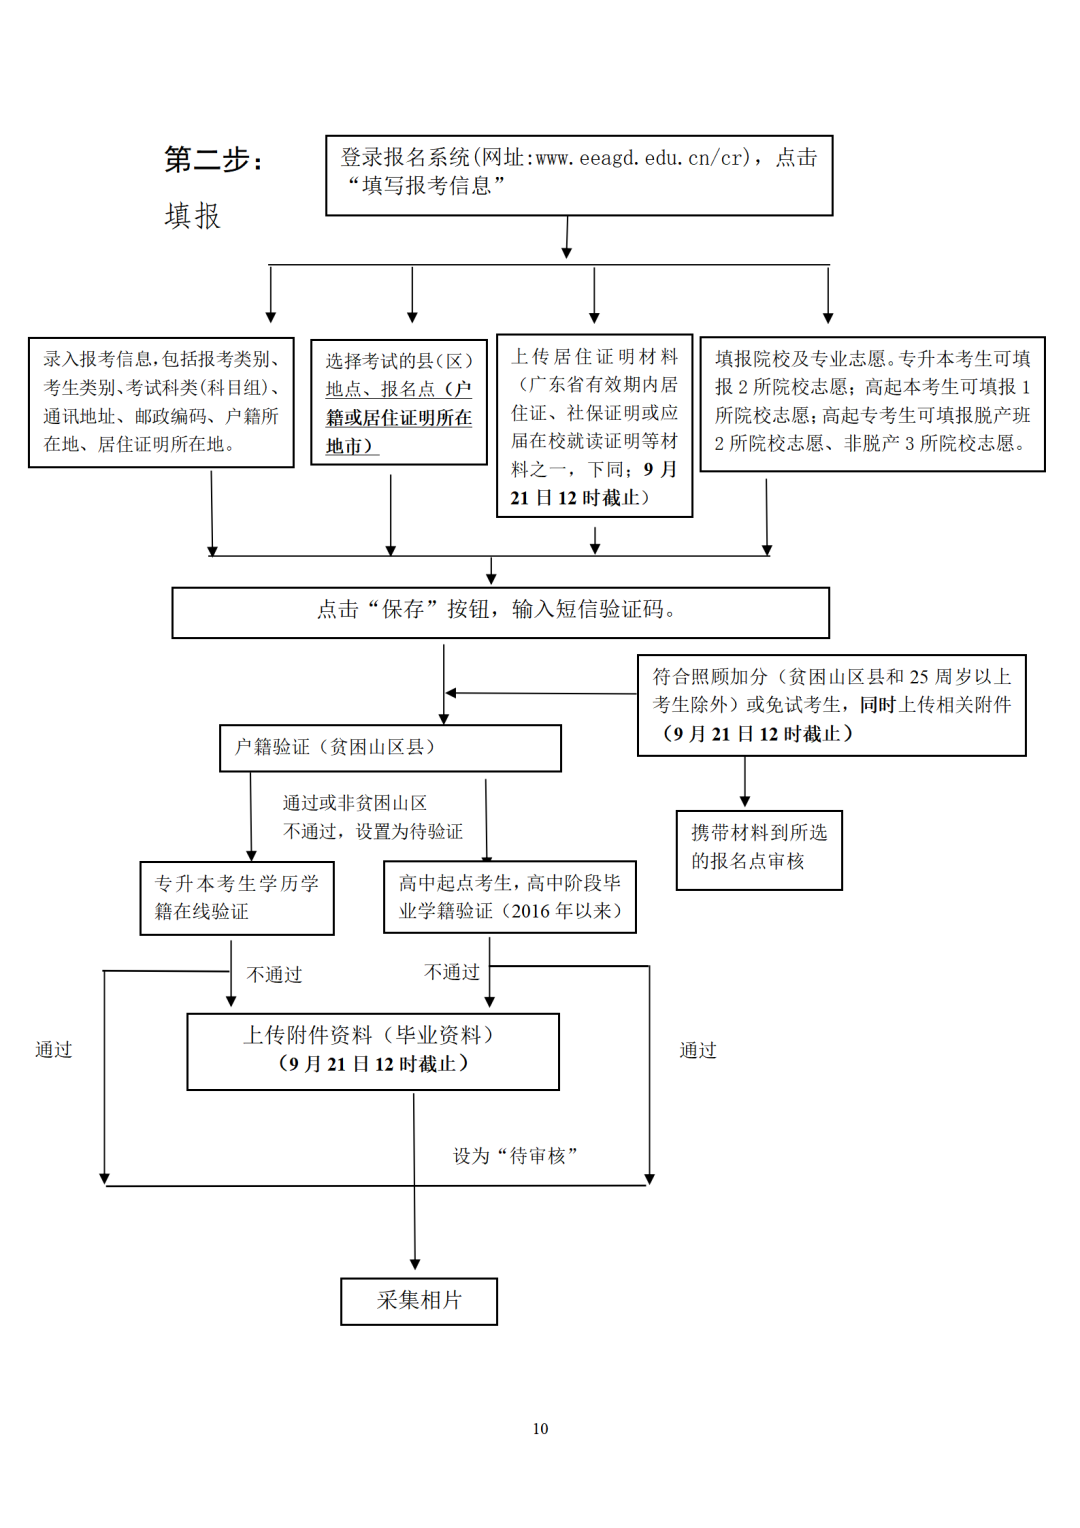 广东省2022年成人高考网上报名志愿填报流程图